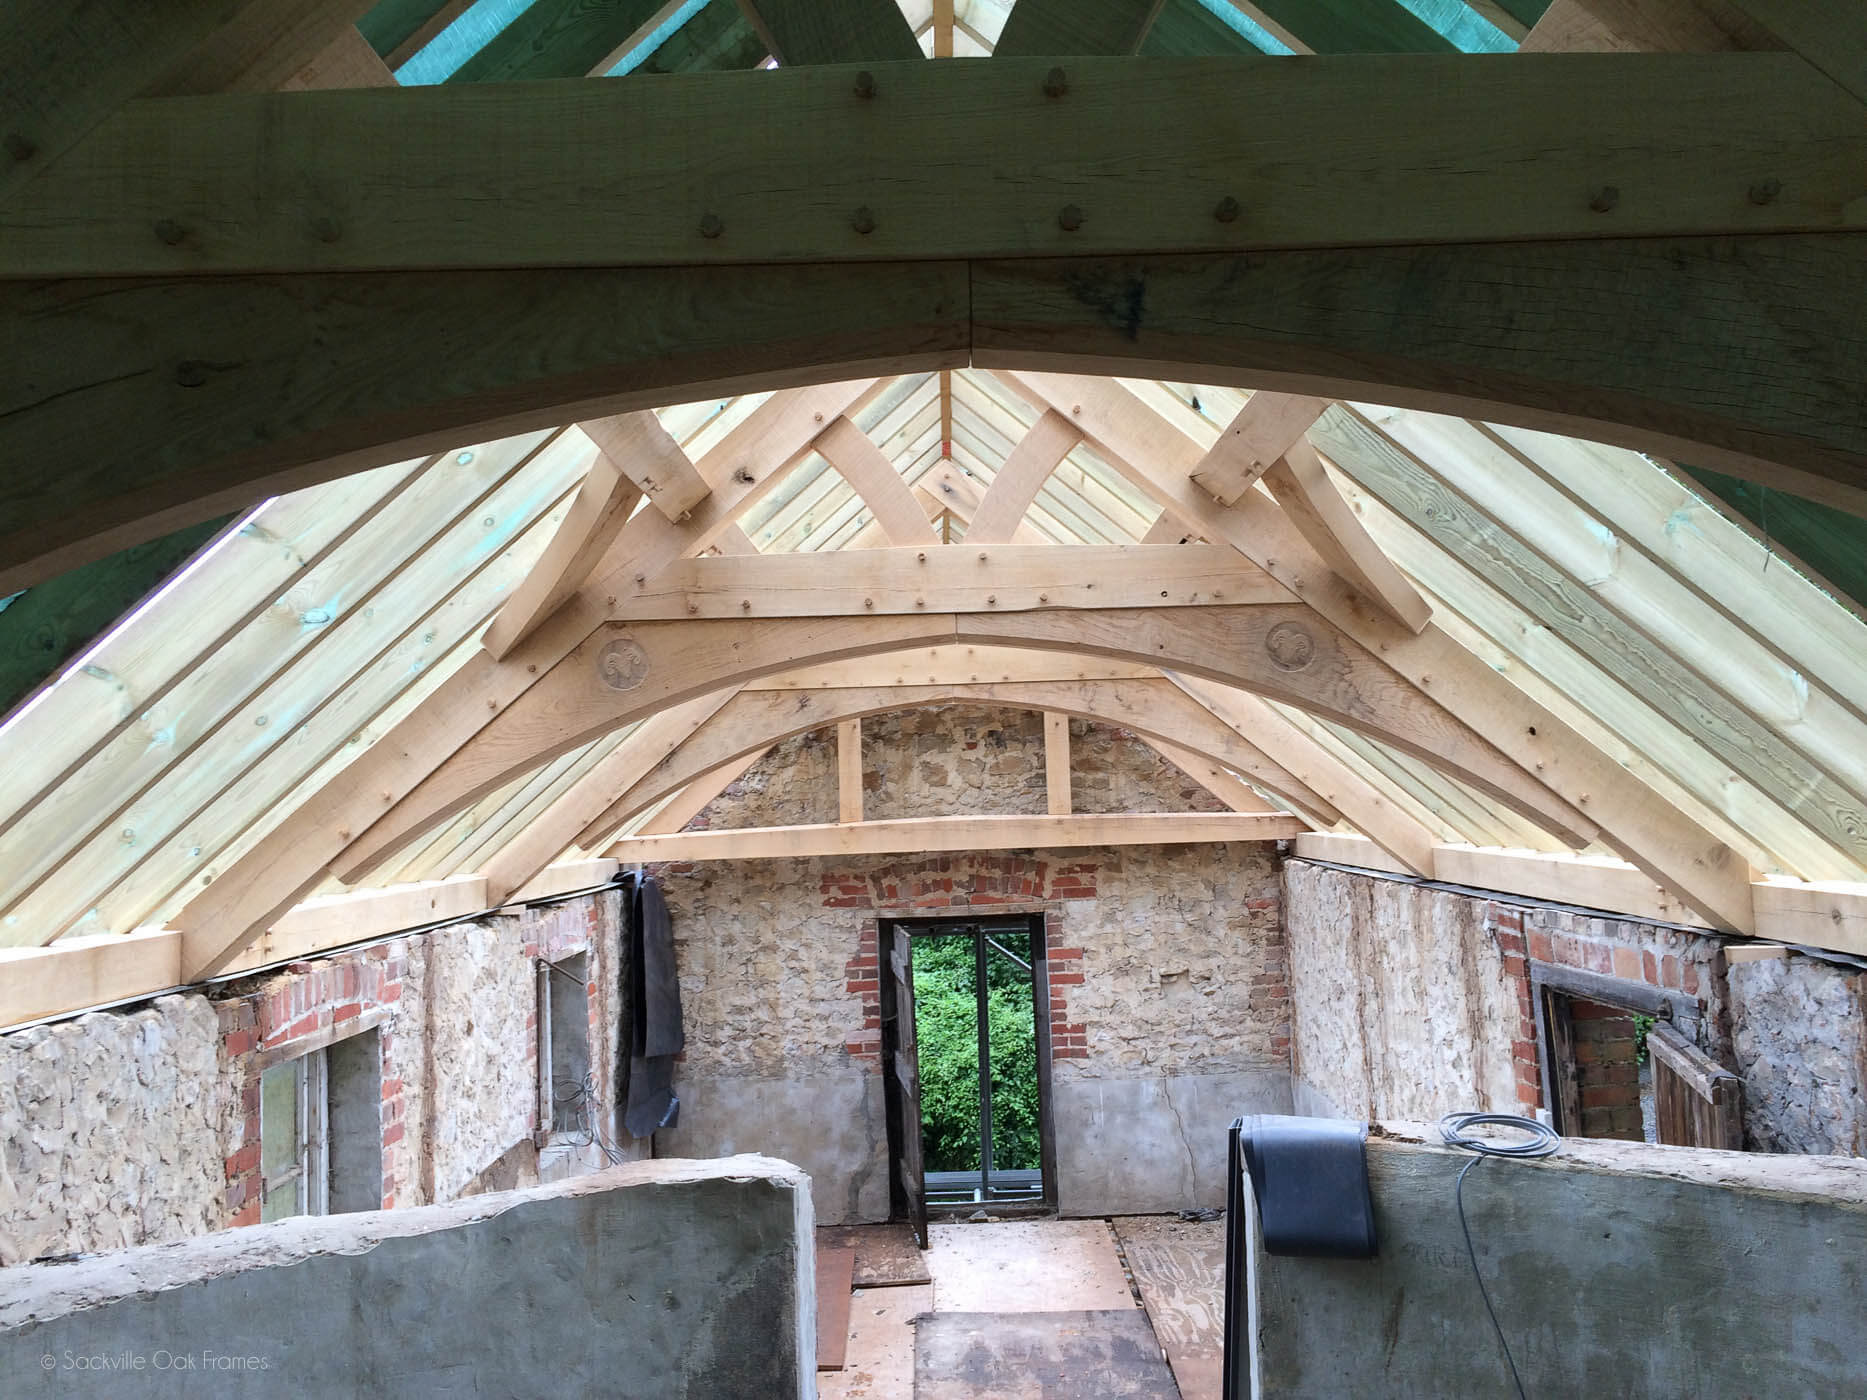 Sackville Oak Frames - Oak Framed Roof - Restoration Project - Building With Glass